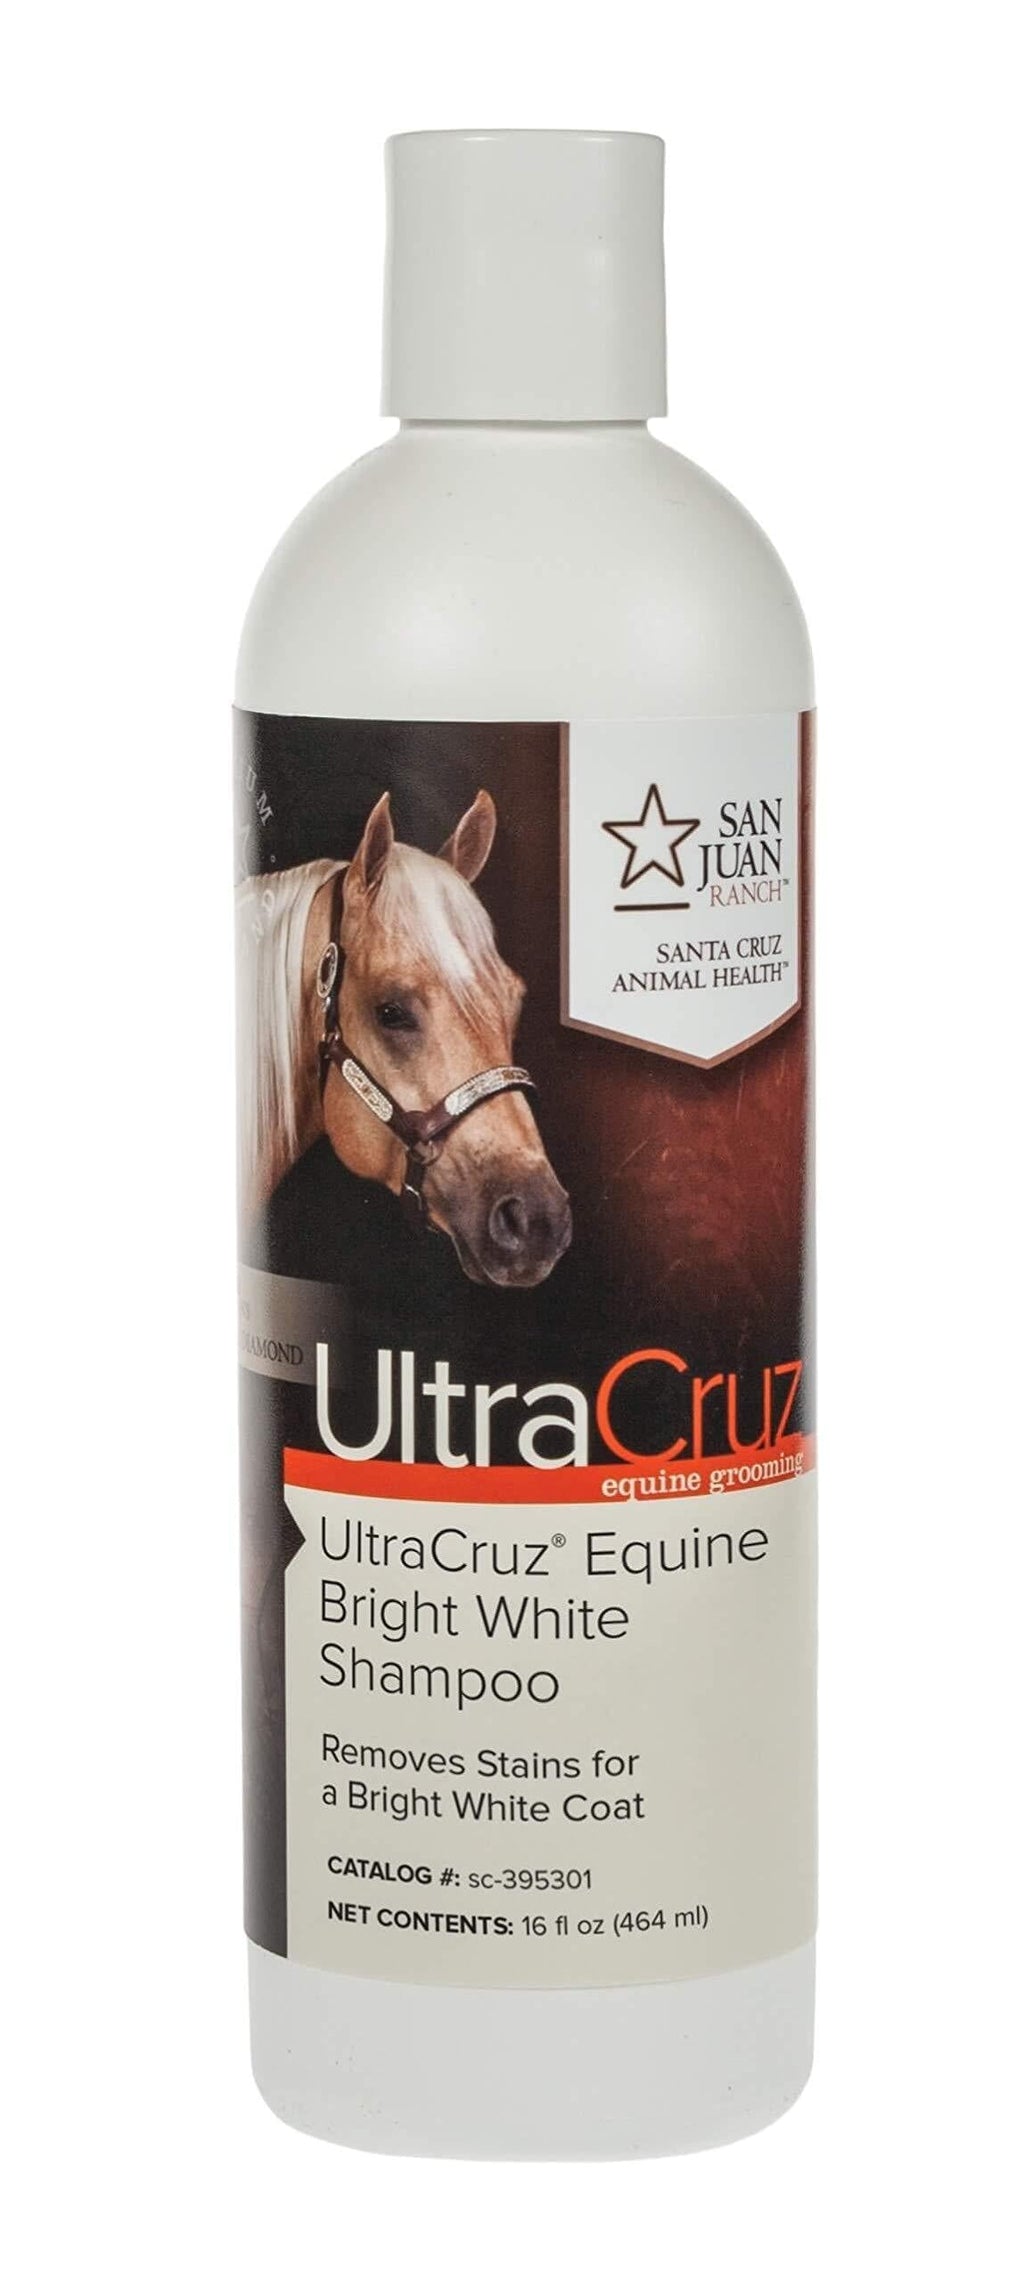 [AUSTRALIA] - UltraCruz Equine Bright White Horse Shampoo, 16 oz 